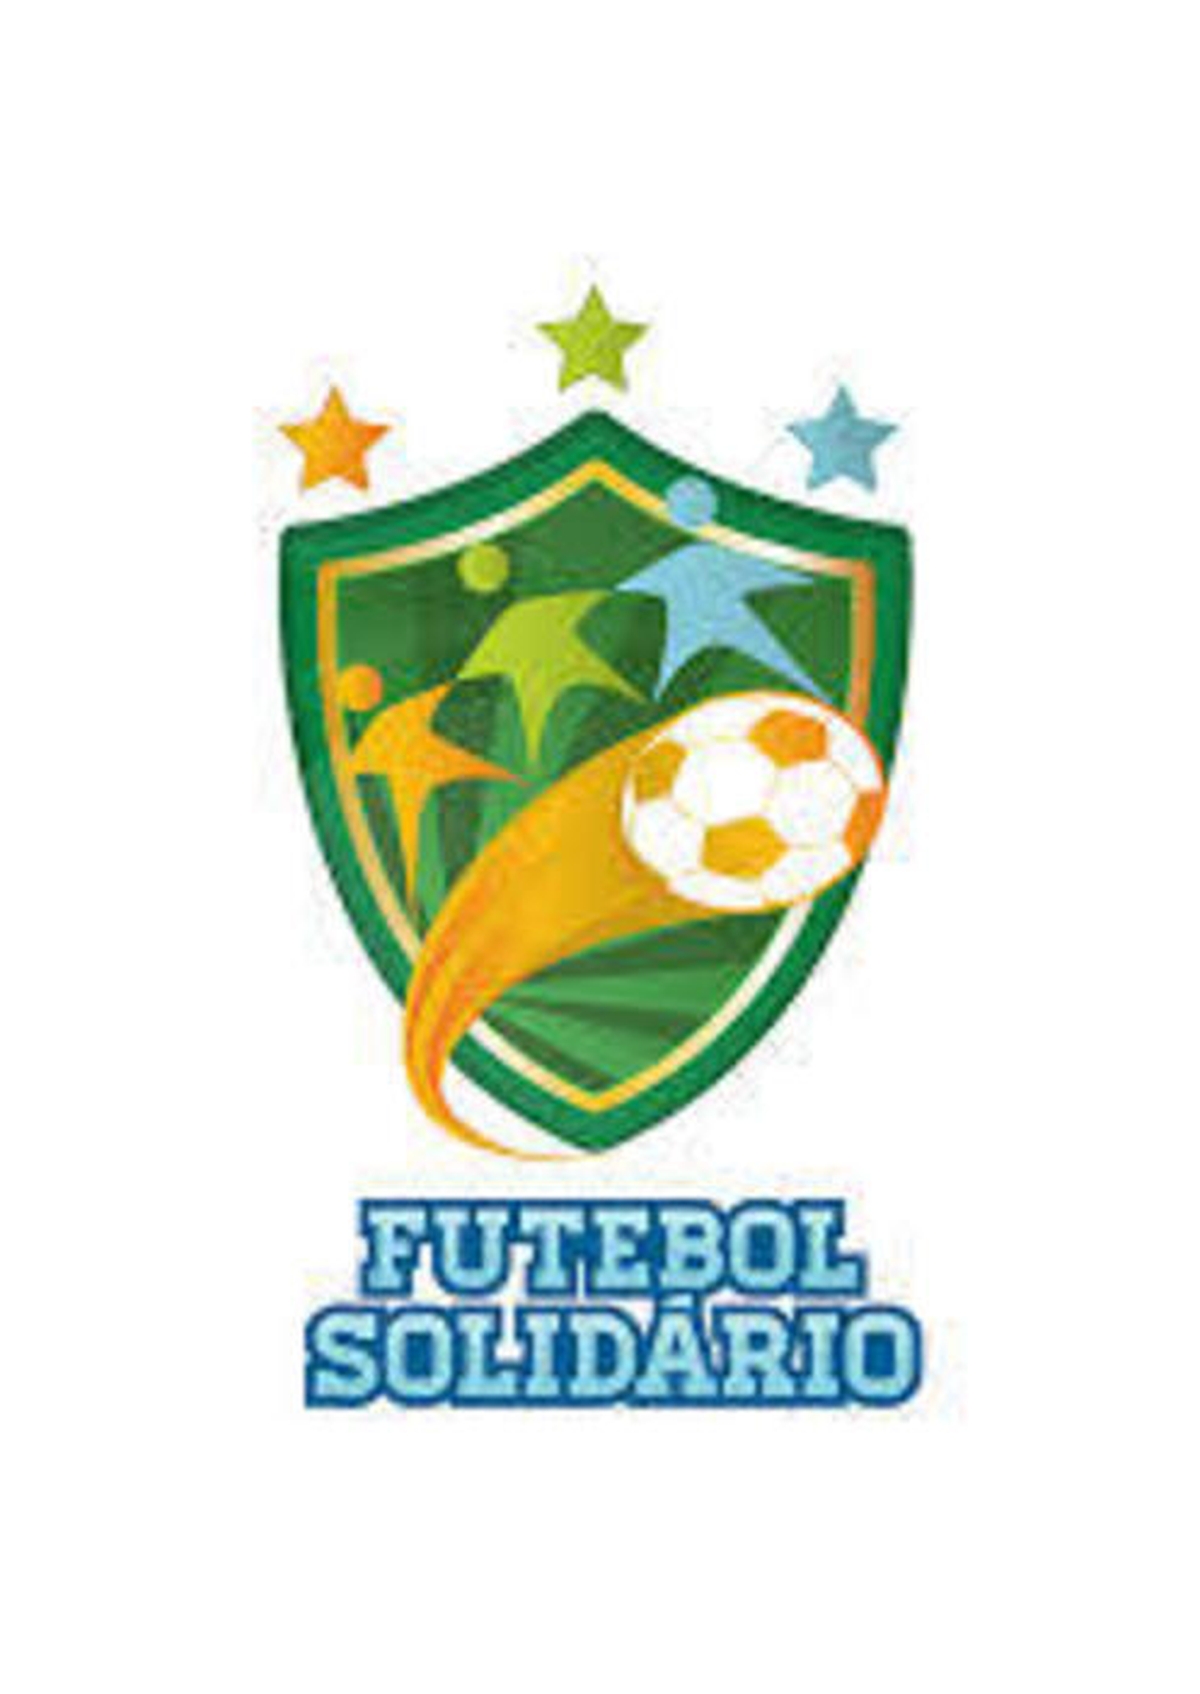 Futebol Solidário!